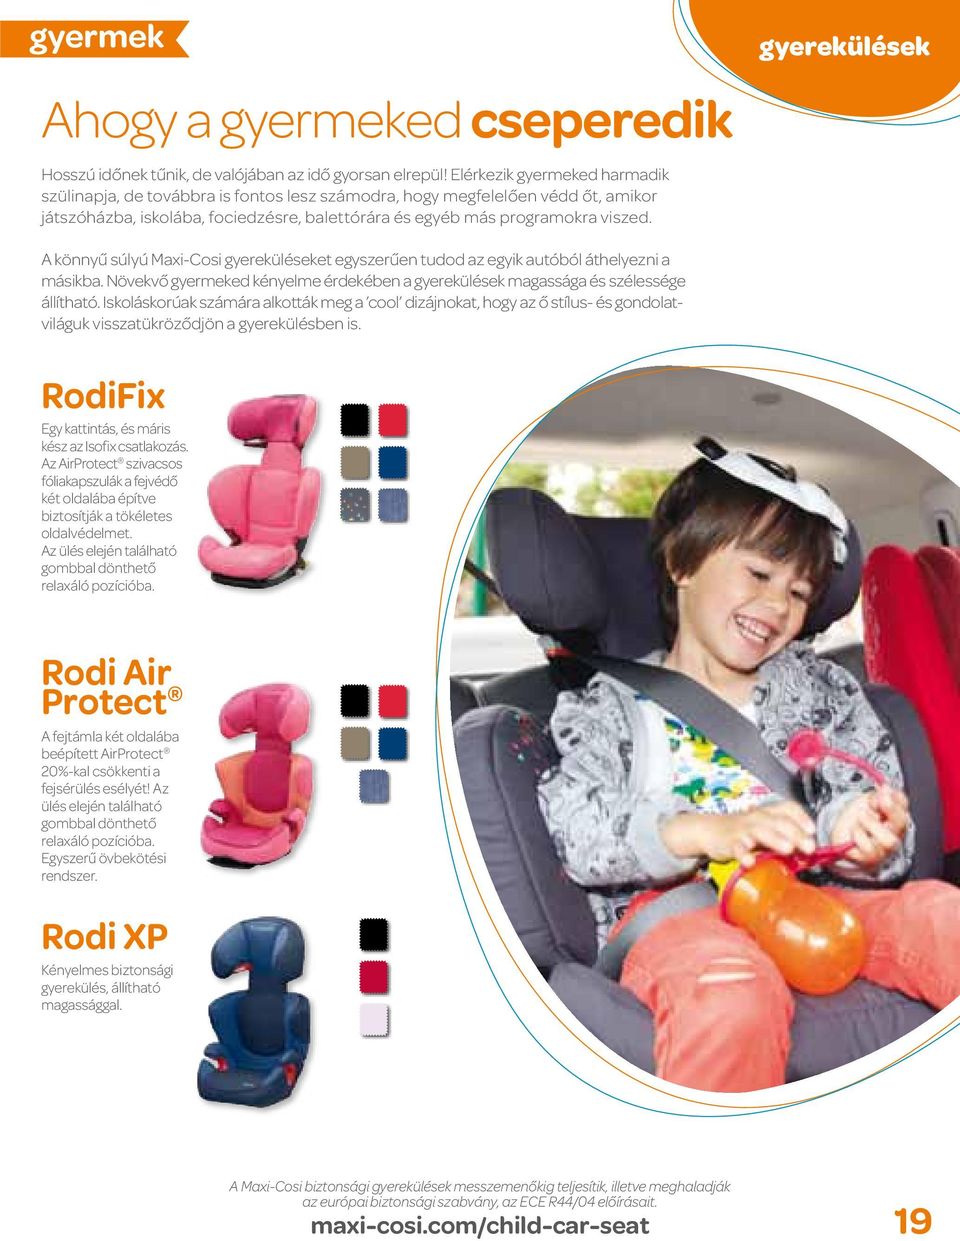 A könnyű súlyú Maxi-Cosi gyereküléseket egyszerűen tudod az egyik autóból áthelyezni a másikba. Növekvő gyermeked kényelme érdekében a gyerekülések magassága és szélessége állítható.